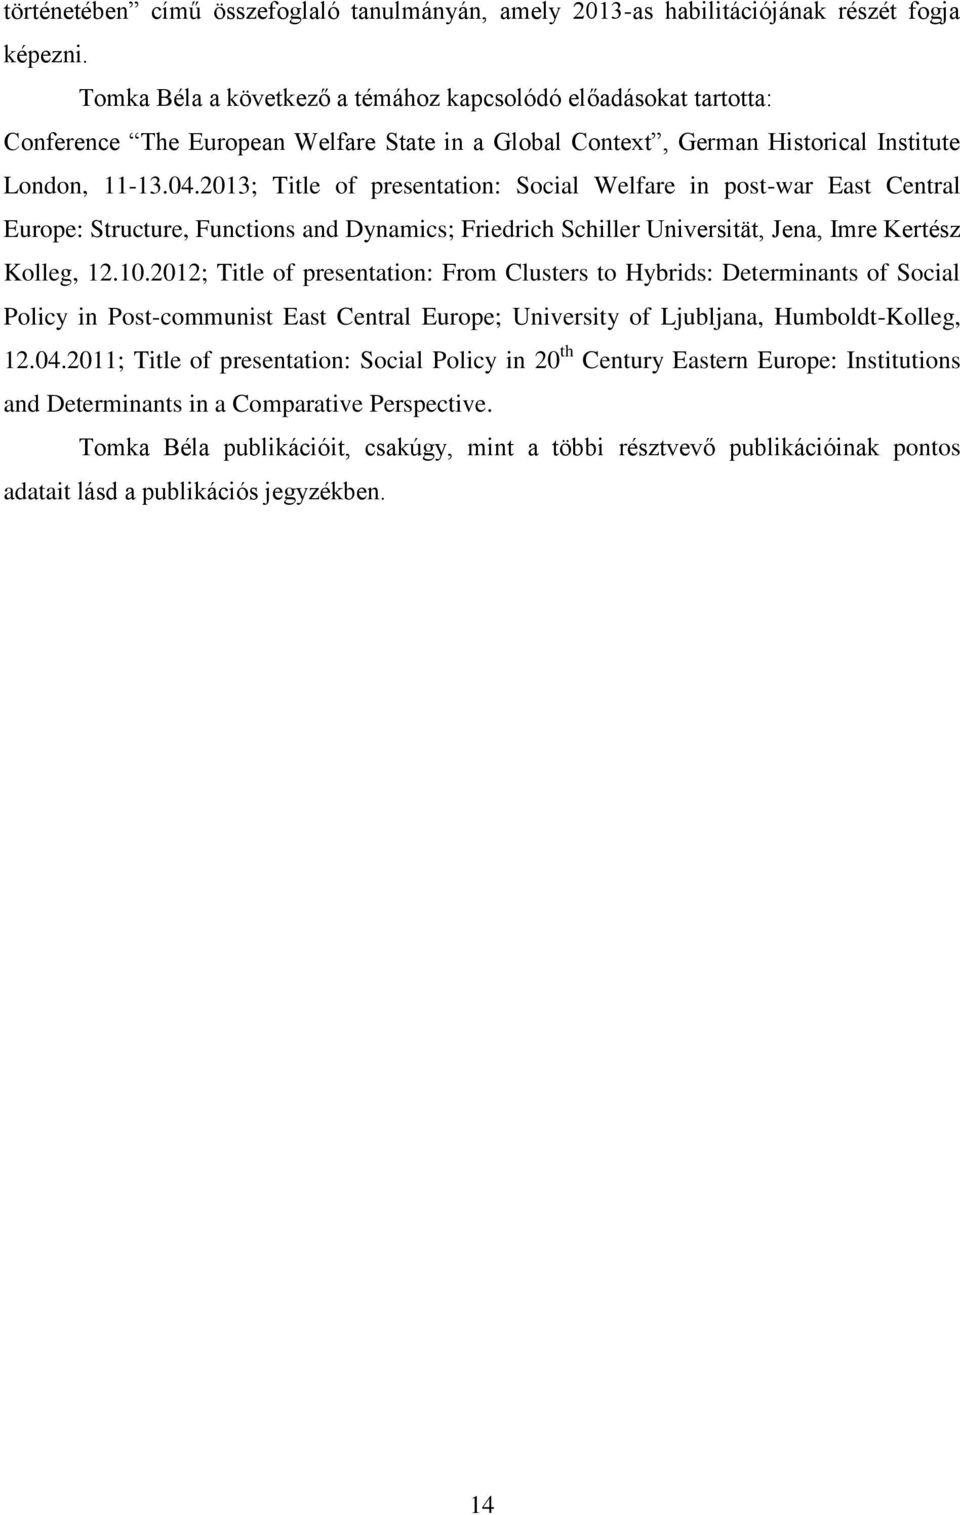 2013; Title of presentation: Social Welfare in post-war East Central Europe: Structure, Functions and Dynamics; Friedrich Schiller Universität, Jena, Imre Kertész Kolleg, 12.10.